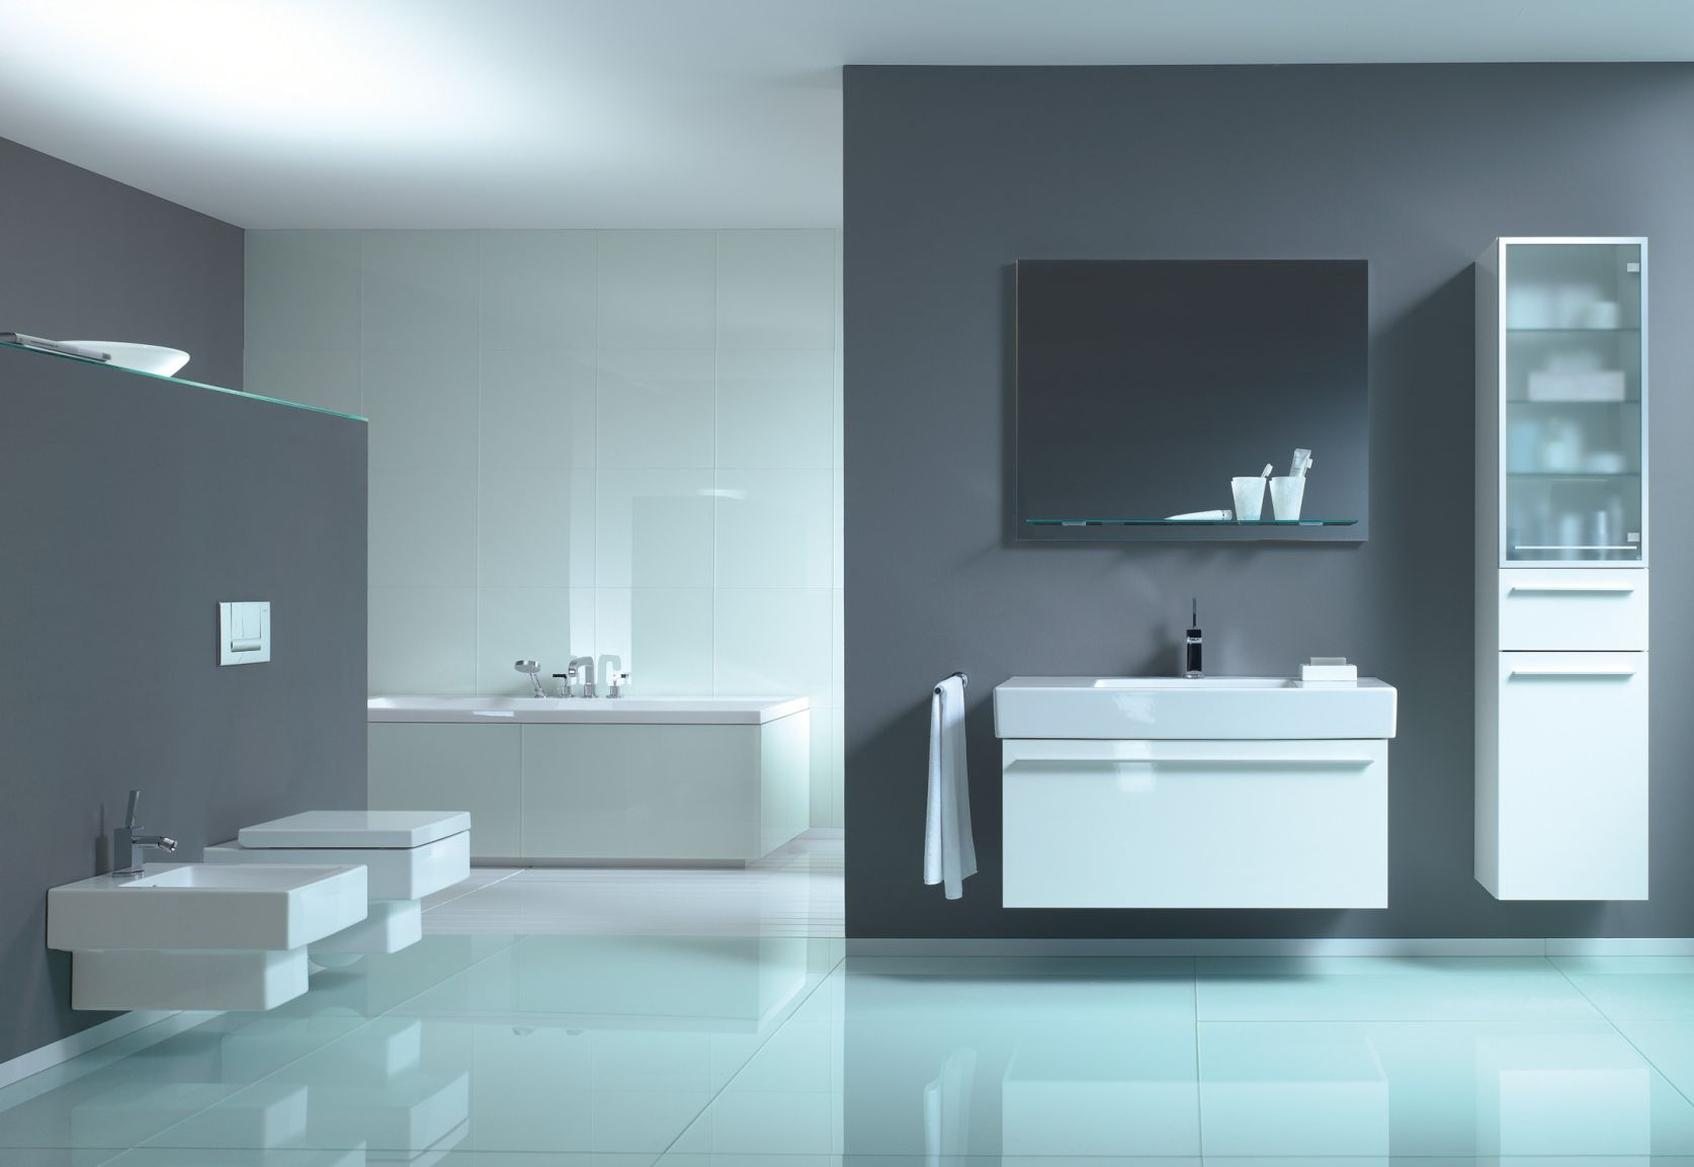 Duravit Vero, łazienka nowoczesna, łazienka w stylu nowoczesnym, nowoczesna łazienka, styl nowoczesny w łazience, wyposażenie łazienek lazienkarium.pl